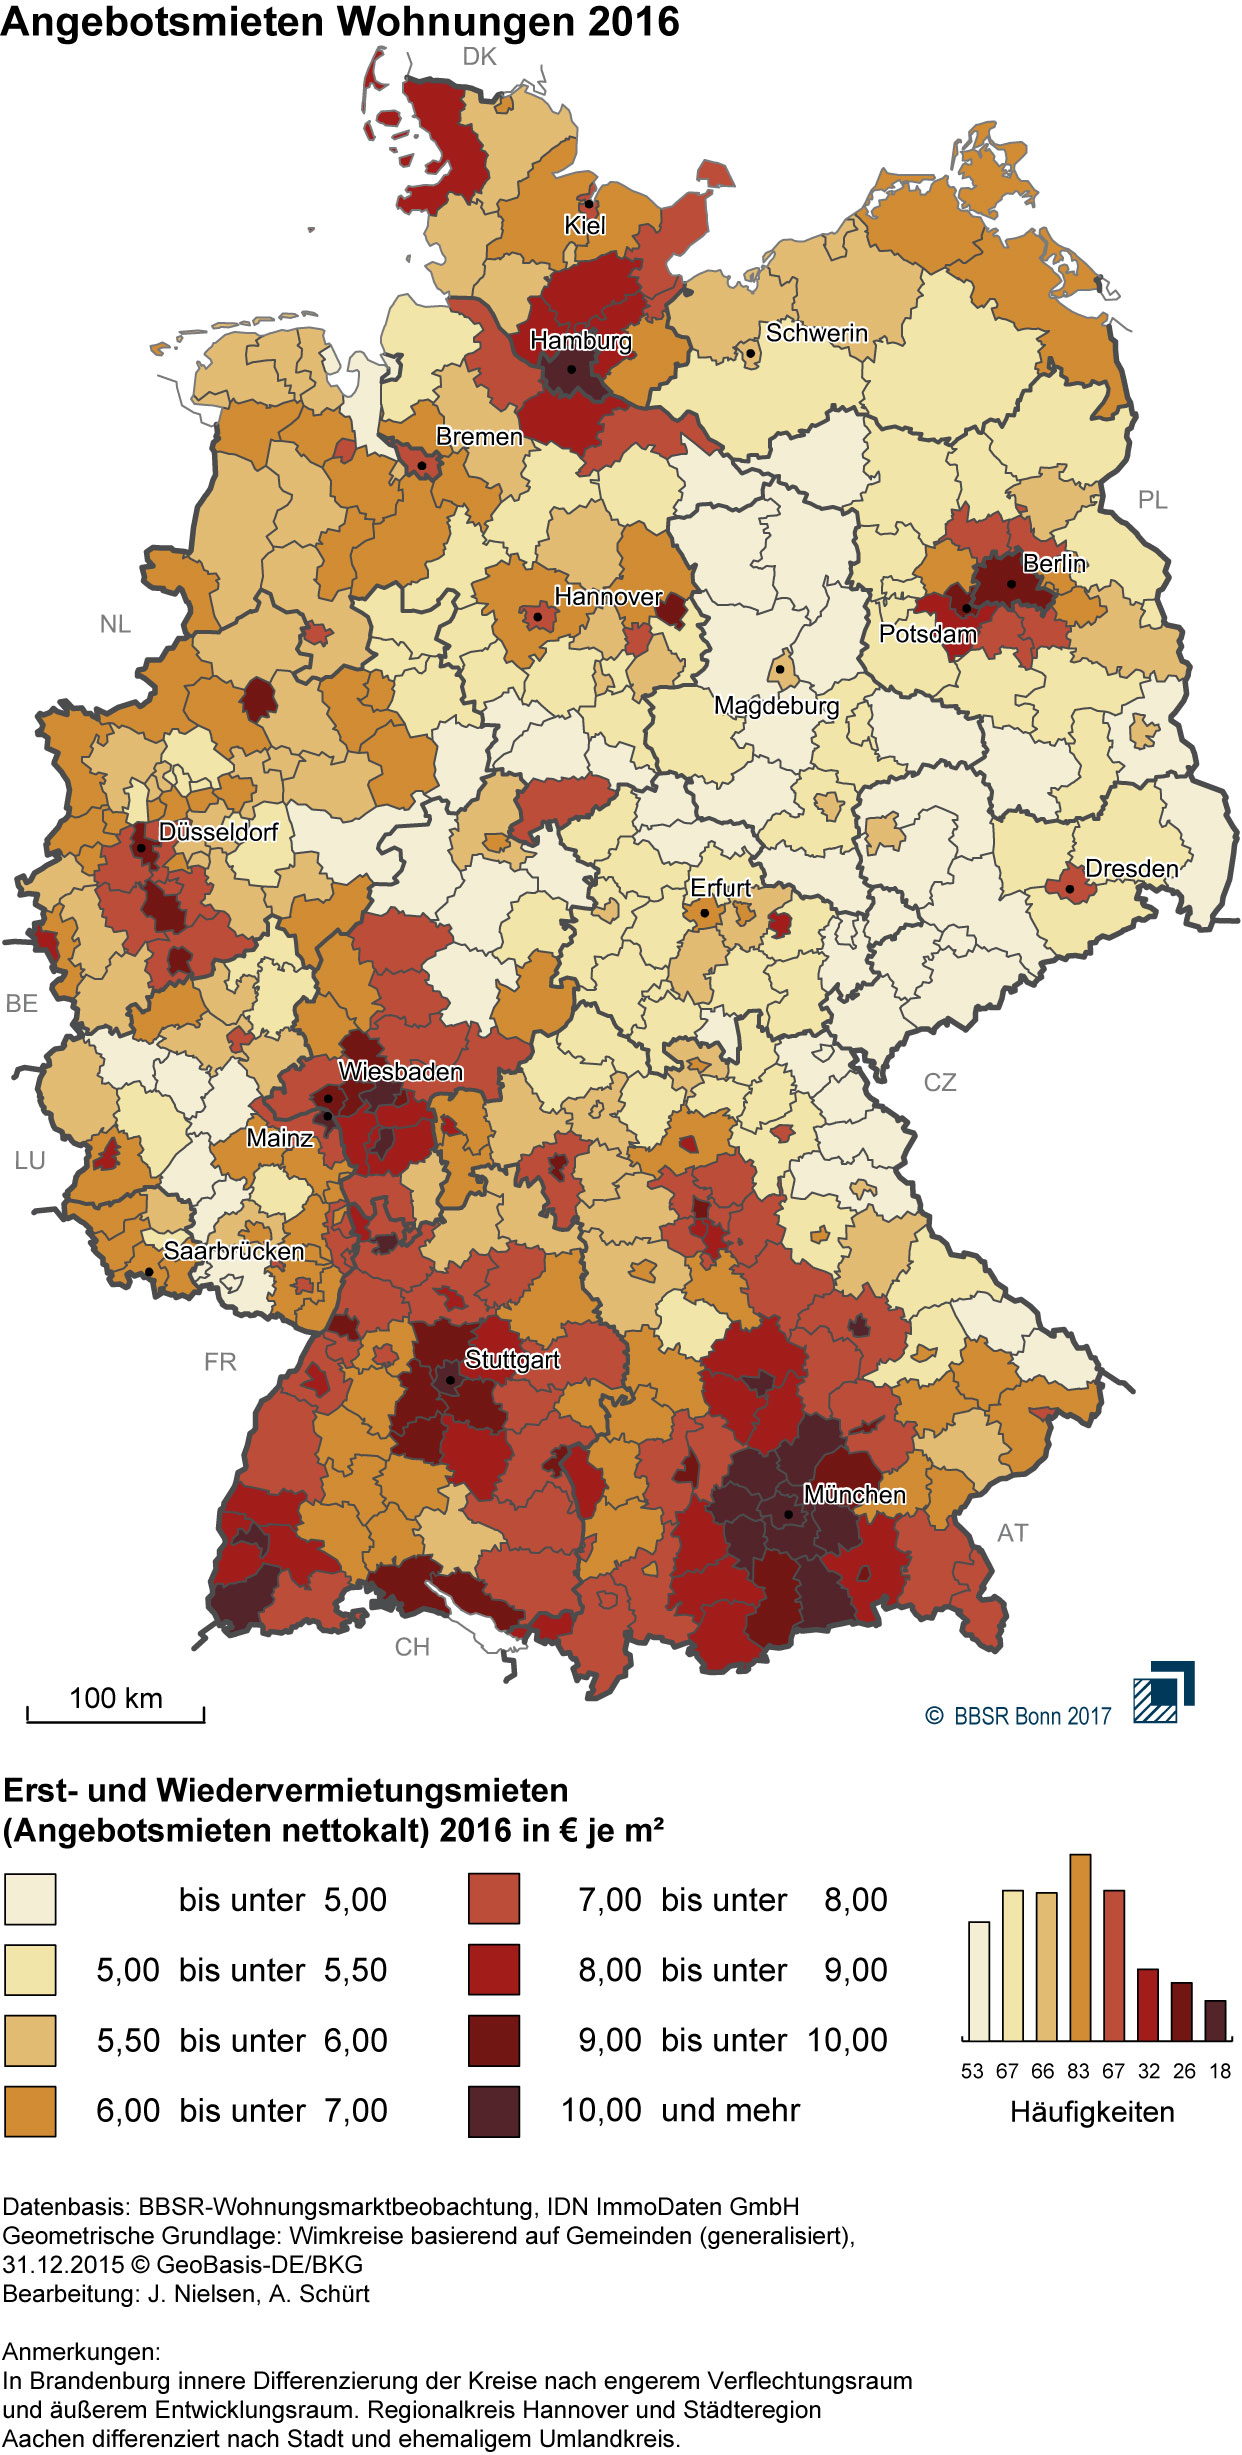 grundstückspreise deutschland karte Wohnungsmieten 2016 flächendeckend gestiegen